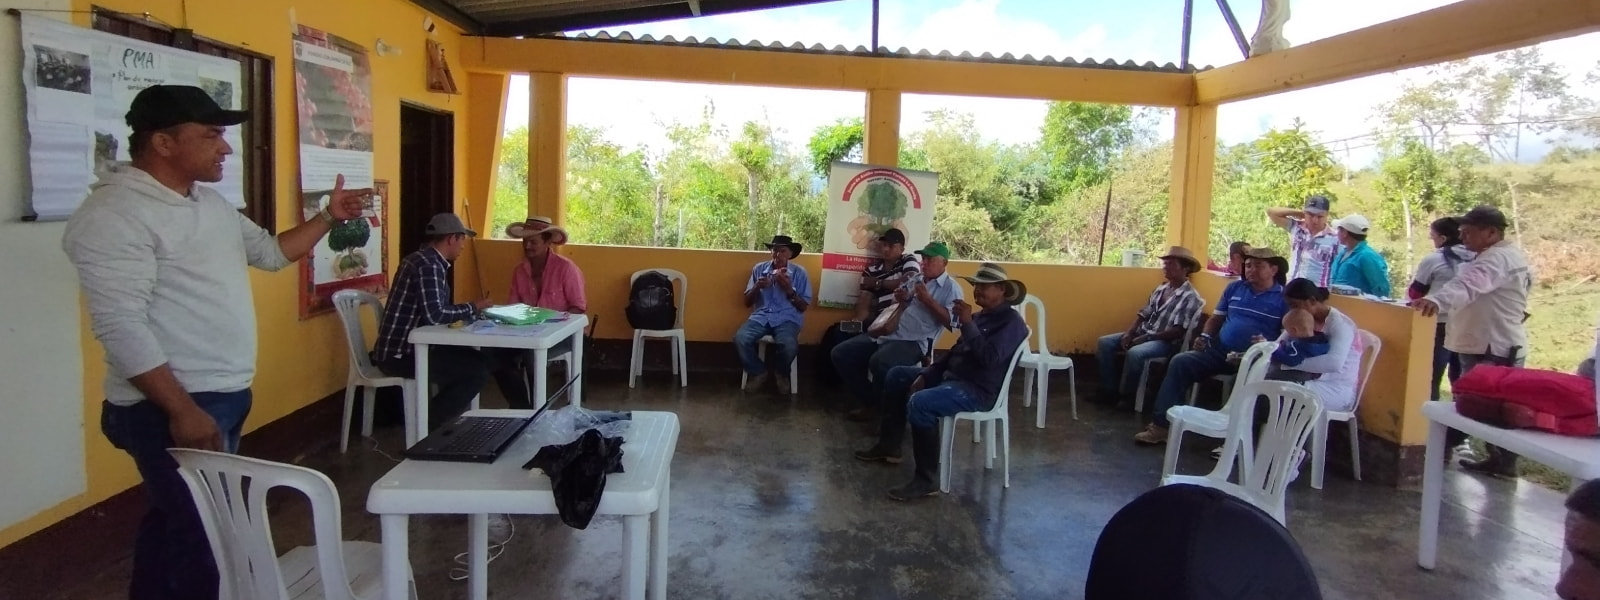 Testimonio Productor de Café de Ituango, Antioquia